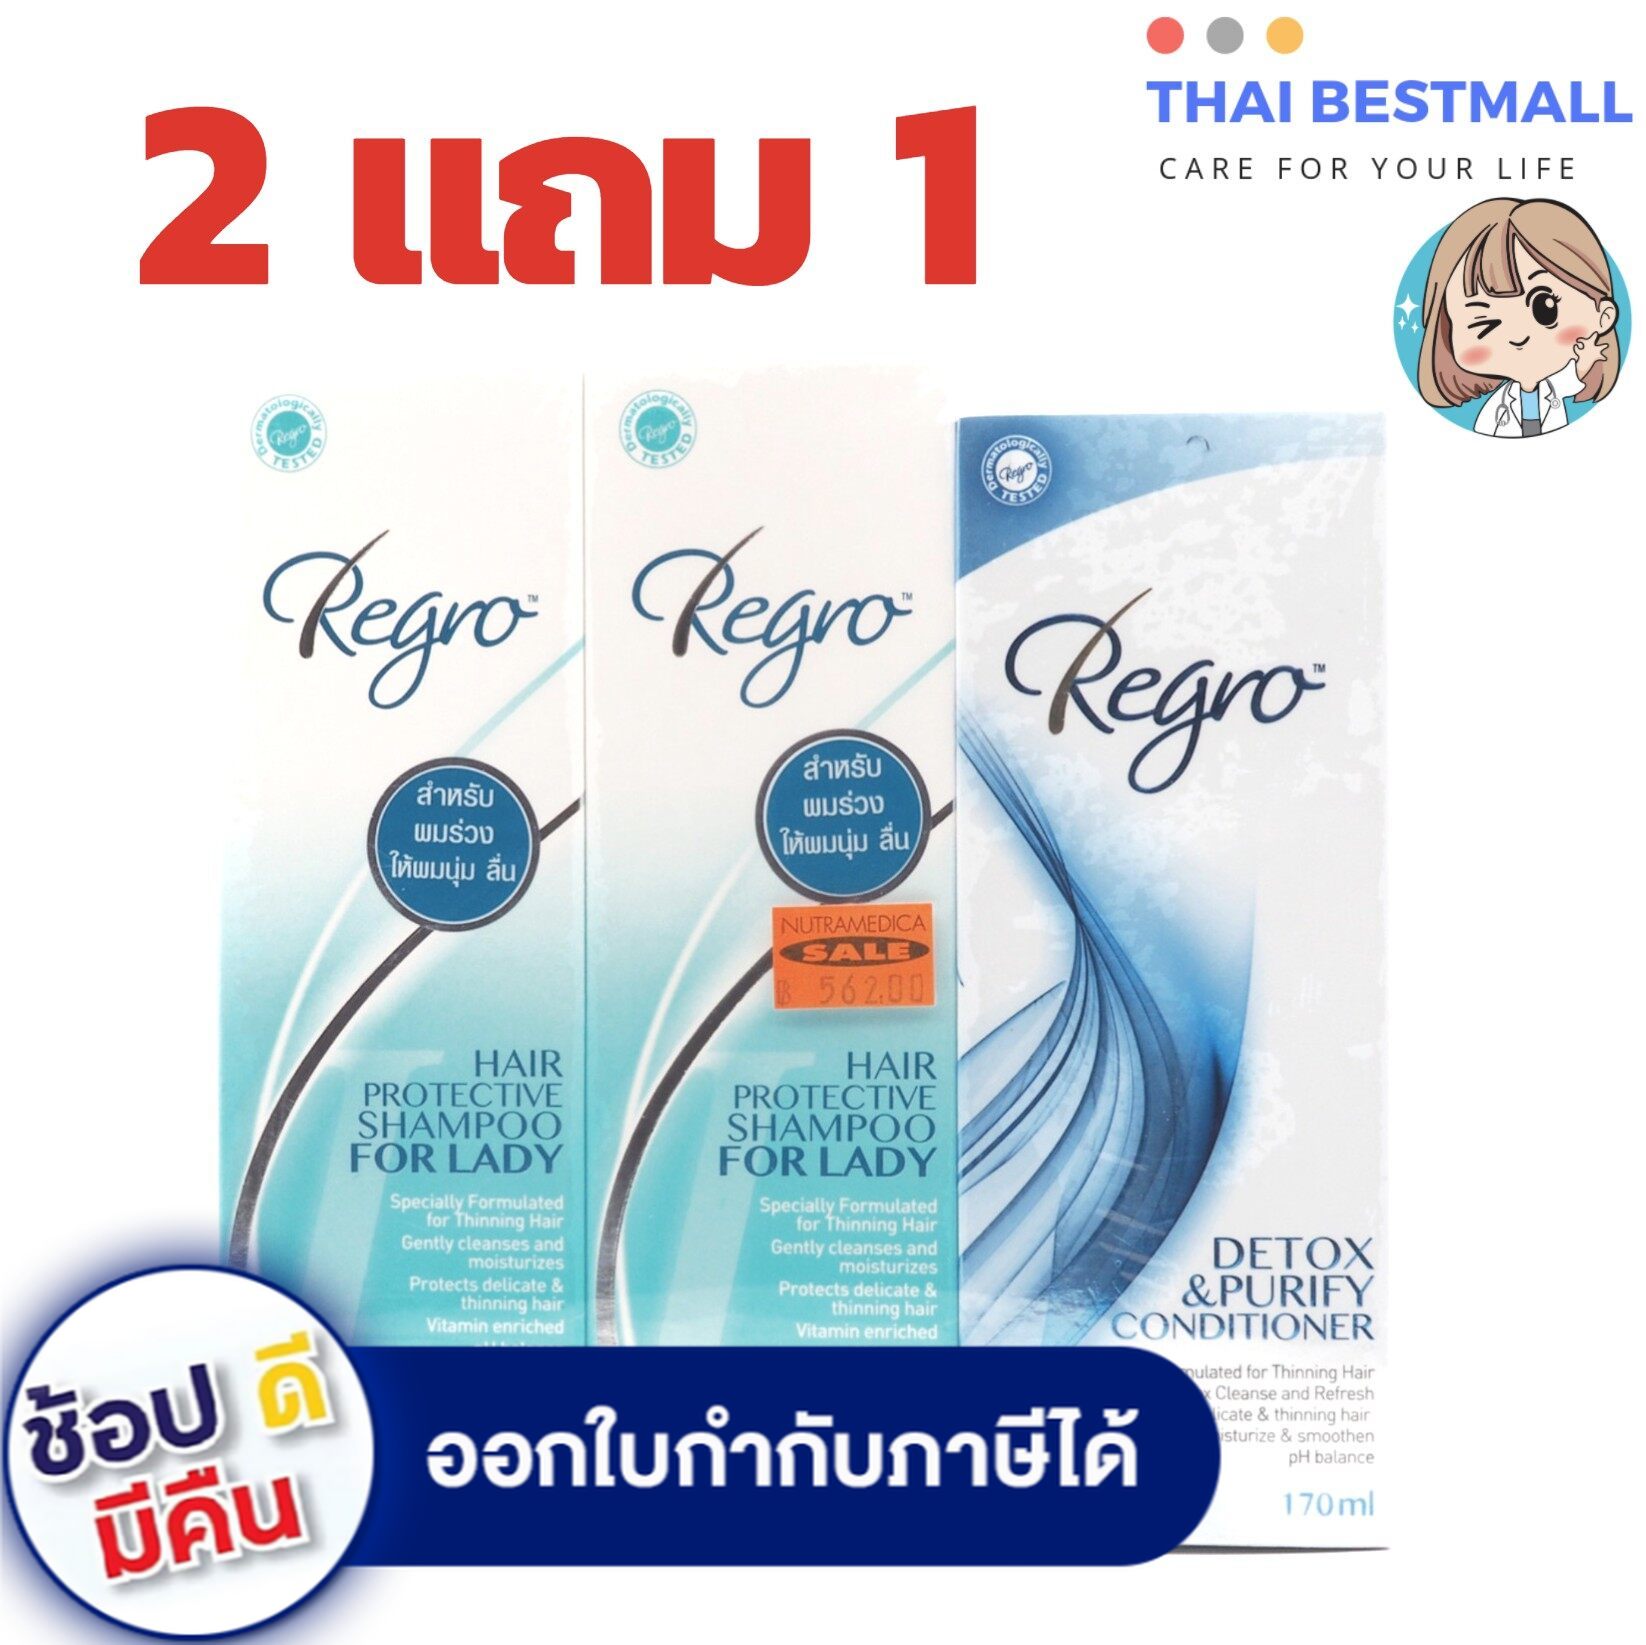 แนะนำ (2 แถม 1) Regro Hair Protective Shampoo for Lady 2 X 225 ml. + Detox Conditioner 170 ml.รีโกร ป้องกัน ผมร่วง บำรุงผม